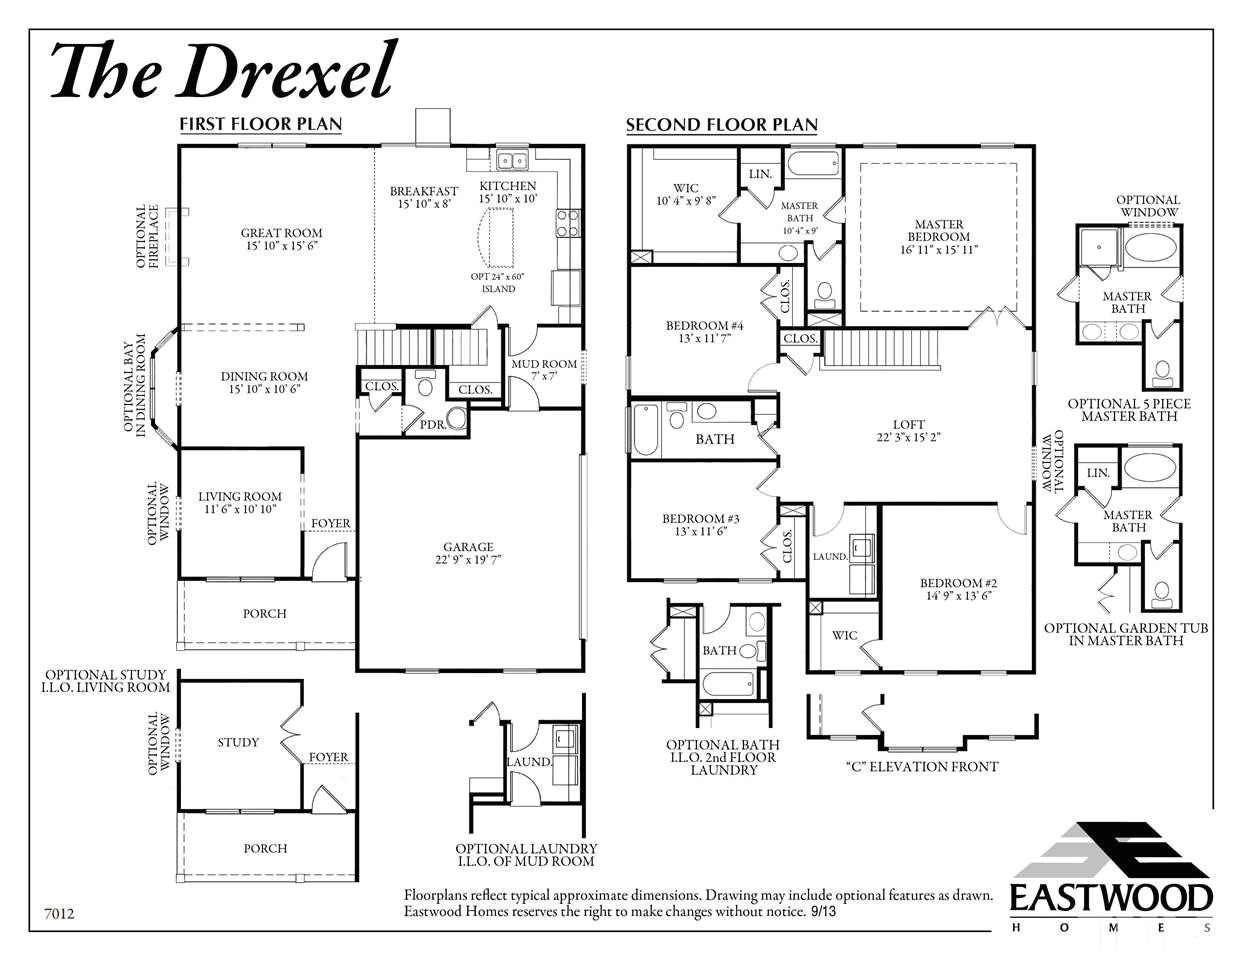 eastwood homes drexel floor plan